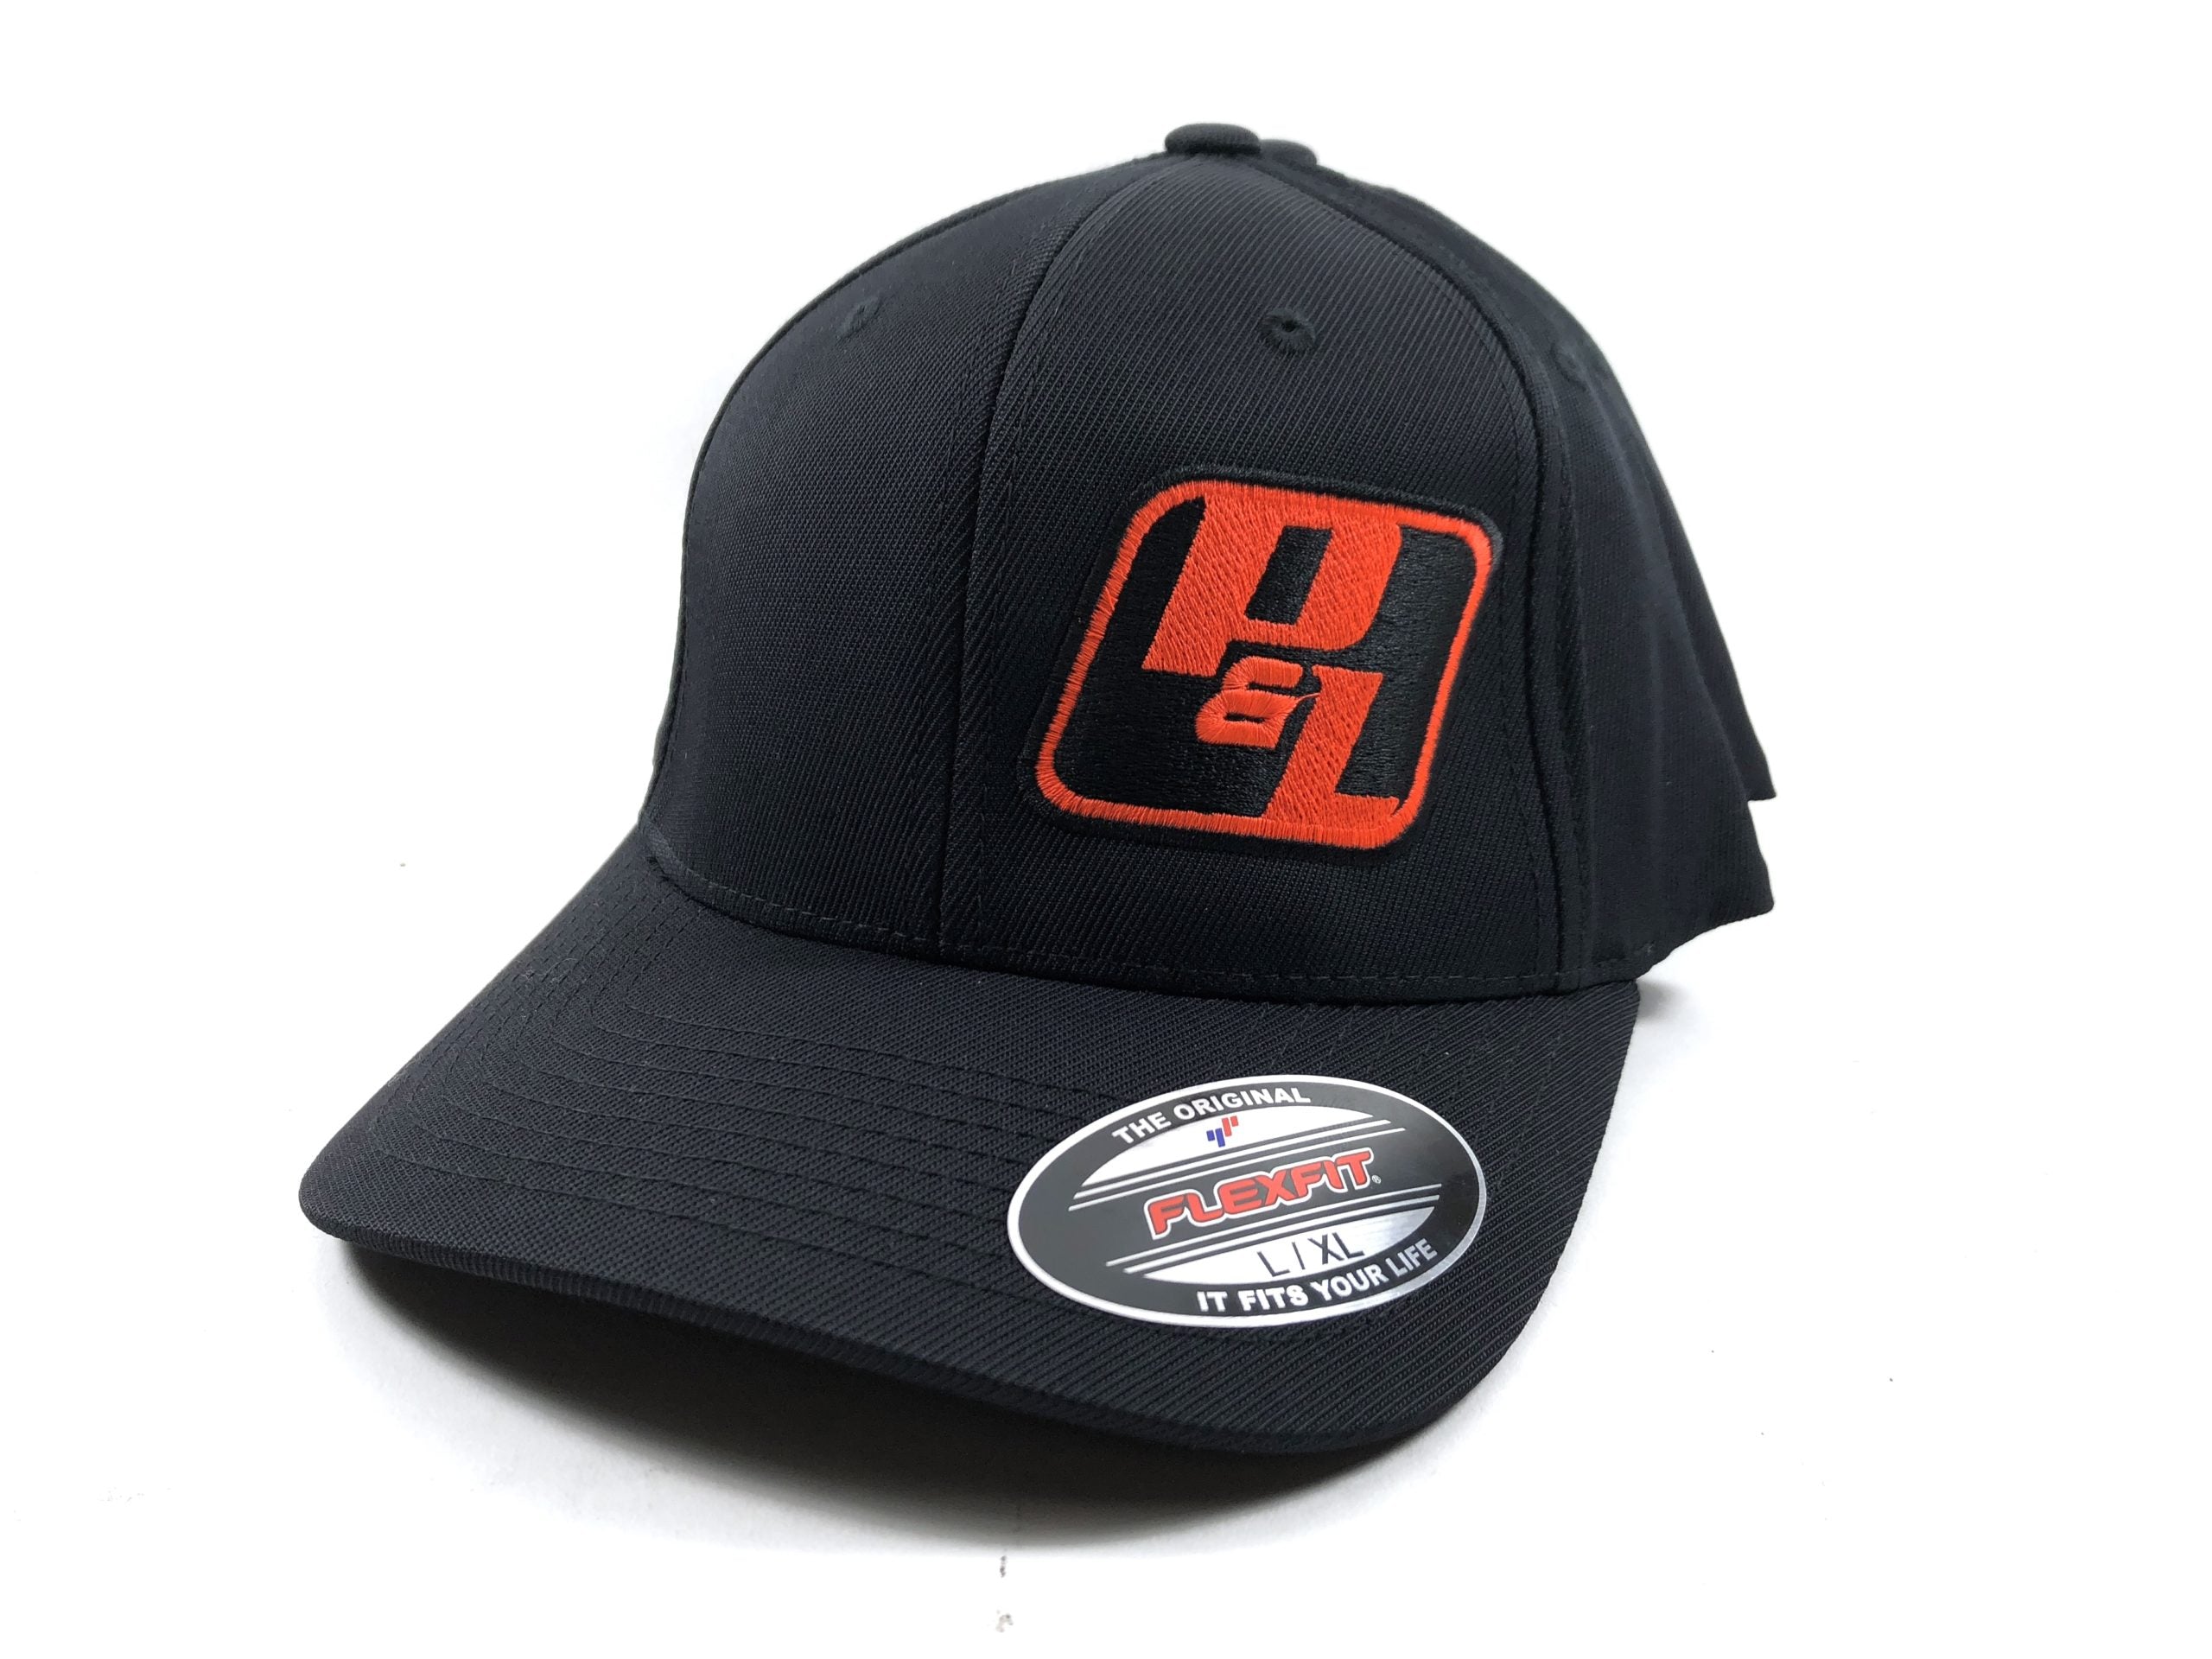 P&L Motorsports Official Hat